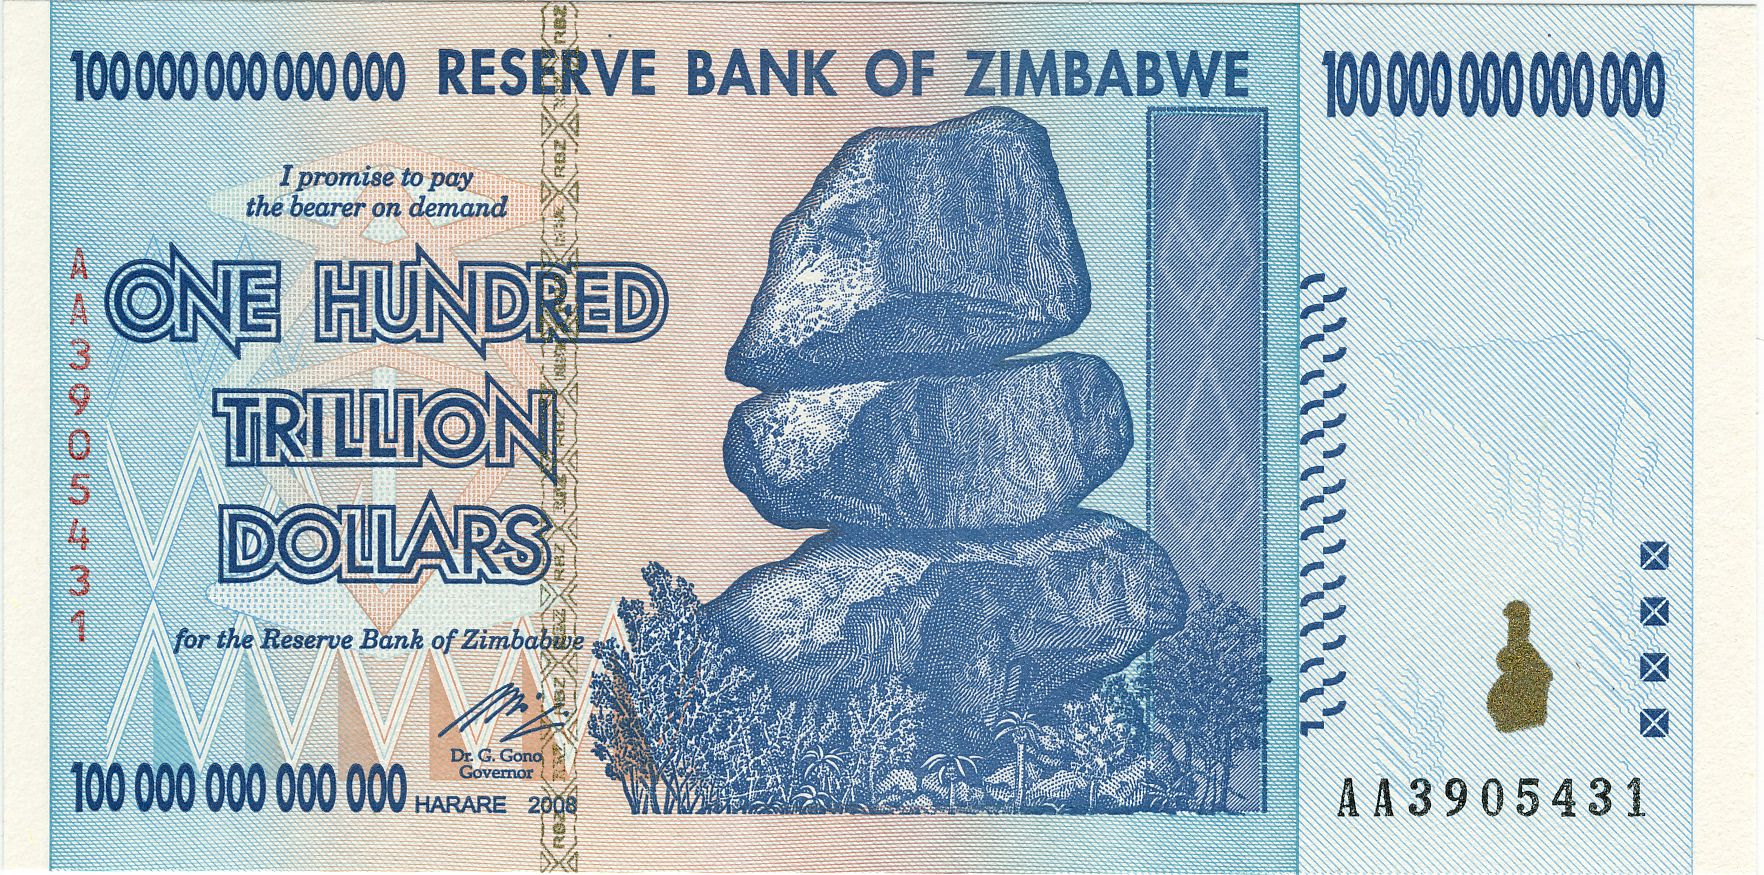 Zimbabwe’s currency